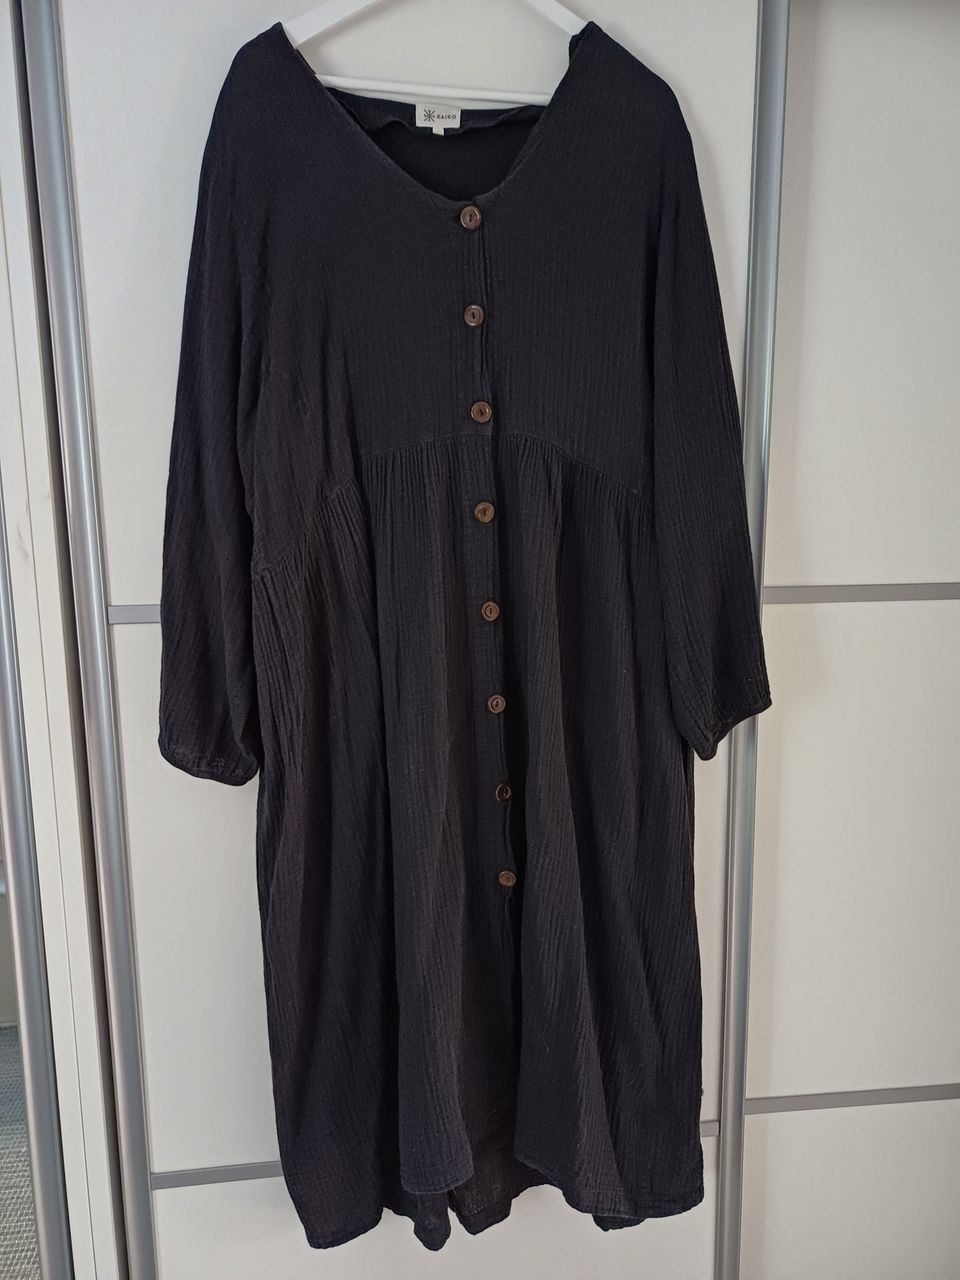 Kaiko Button Dress, XL